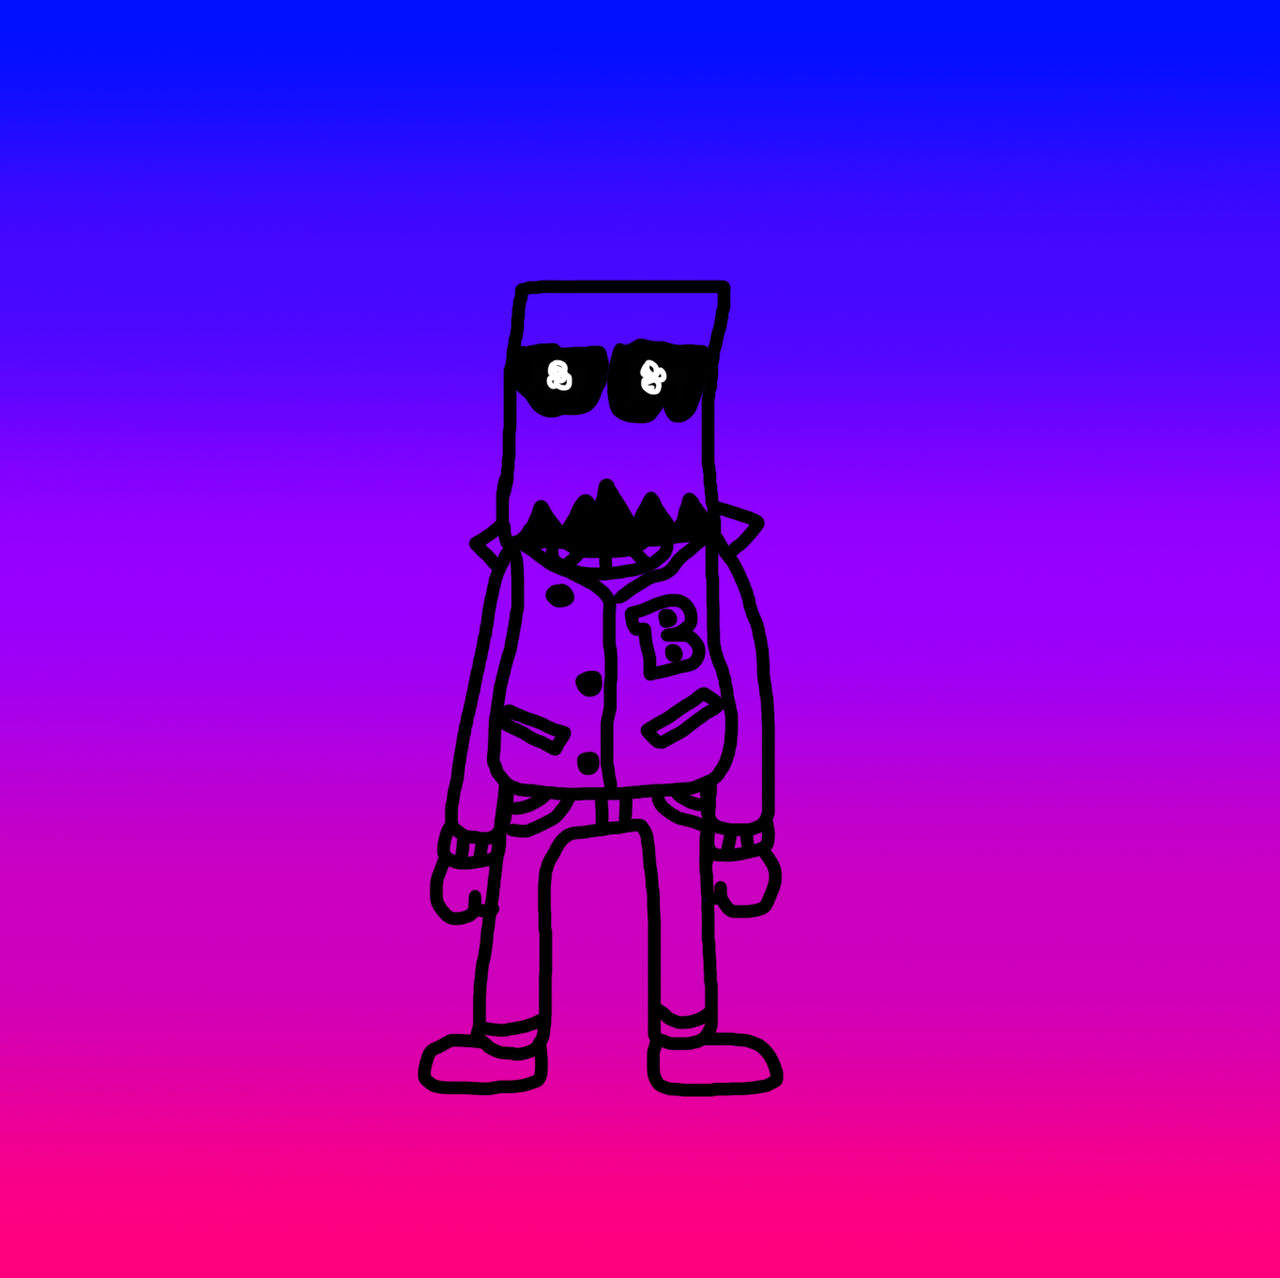 PaperBag Man alternate version 1 by BatKai51 on DeviantArt